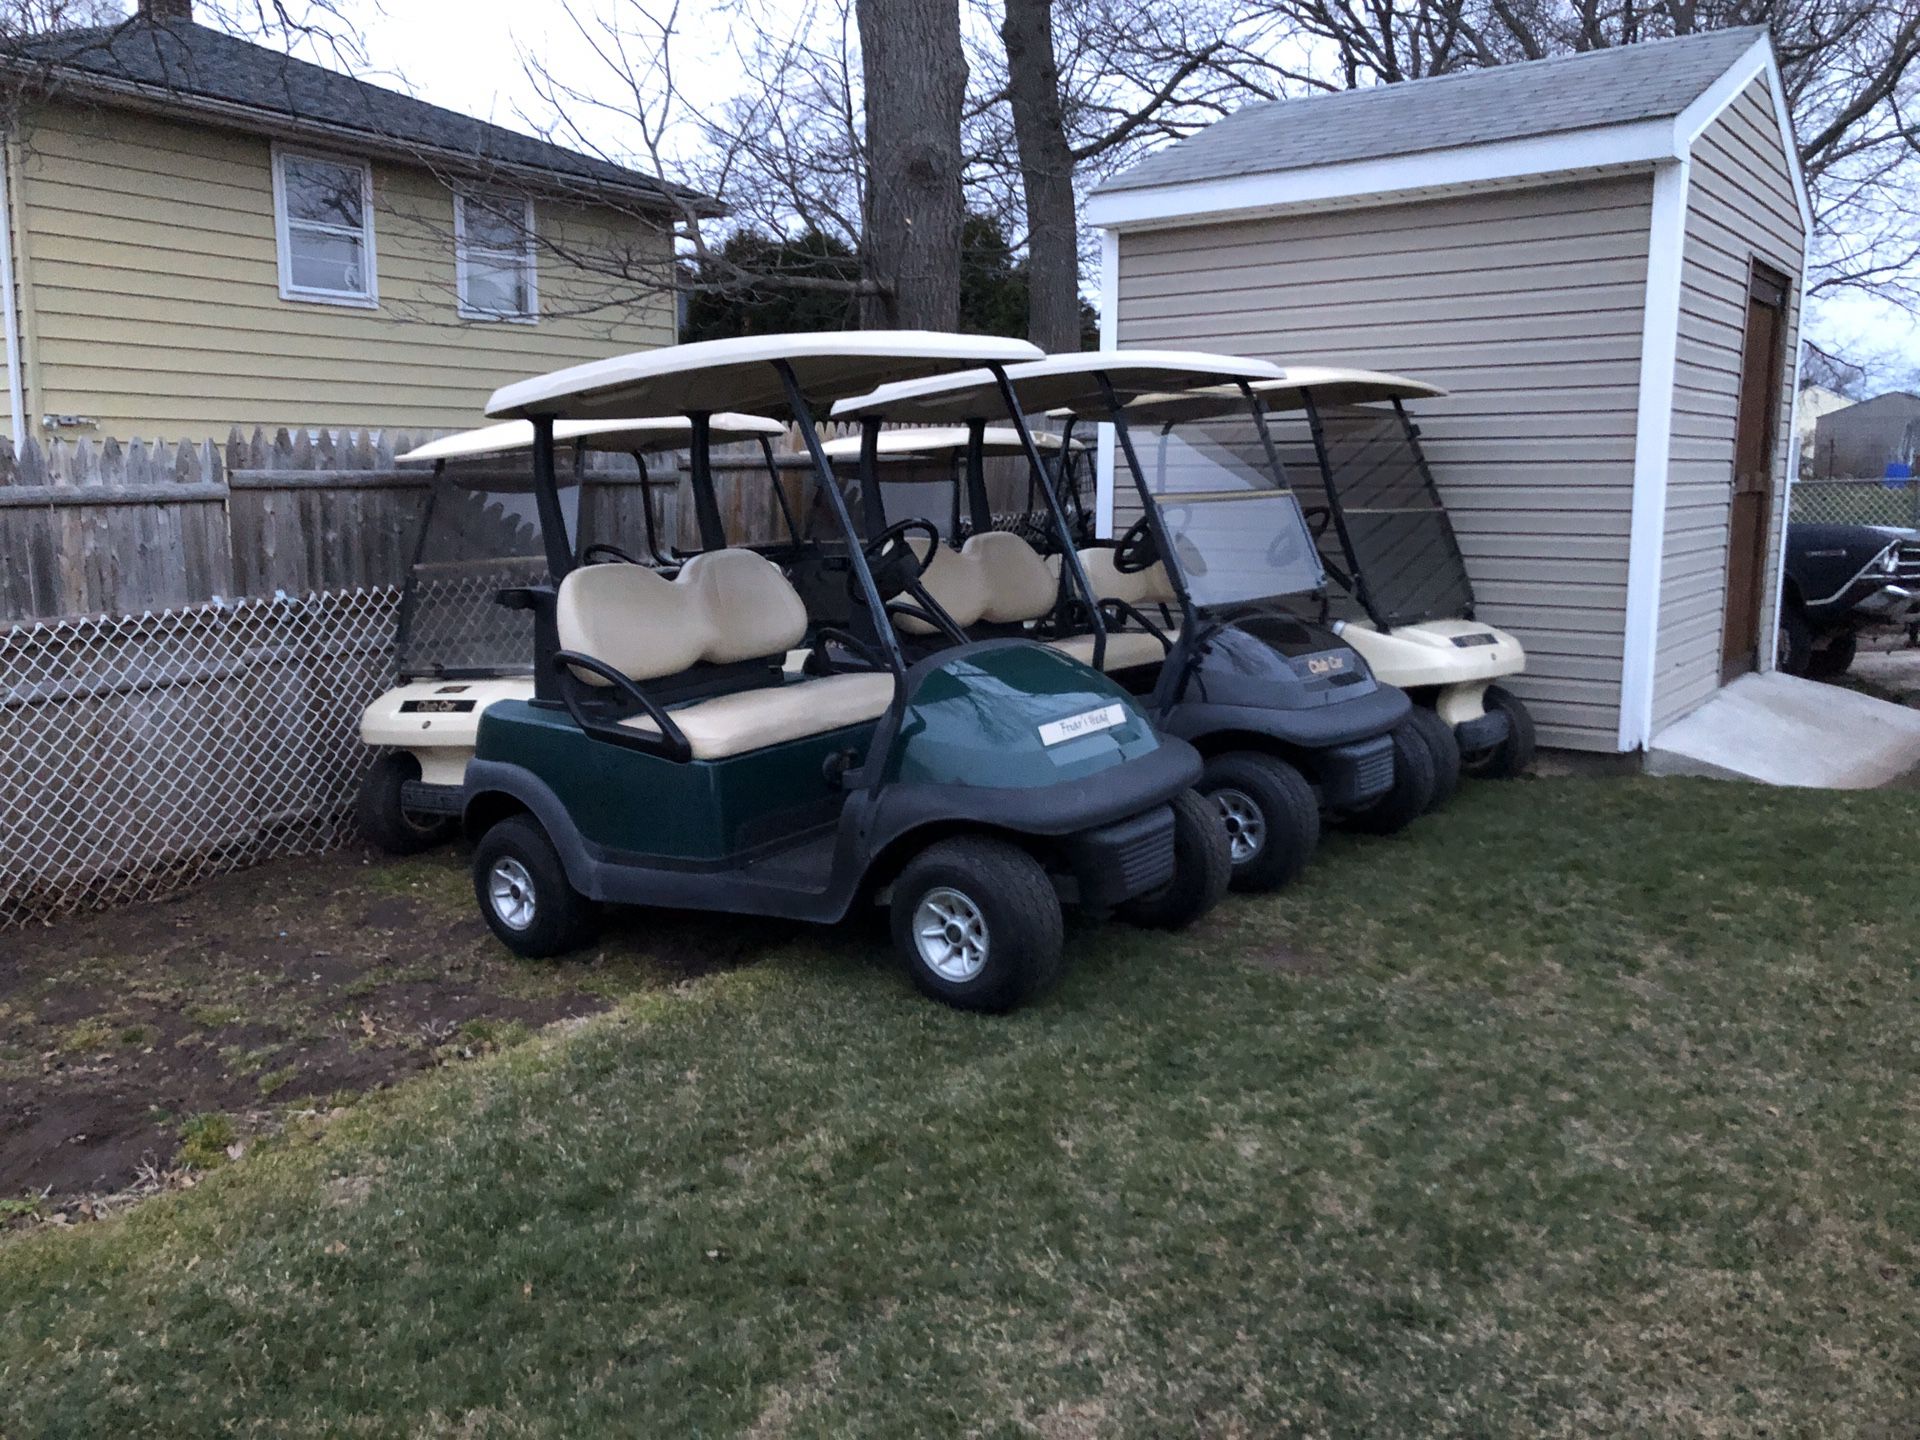 Clubcar gas golf carts